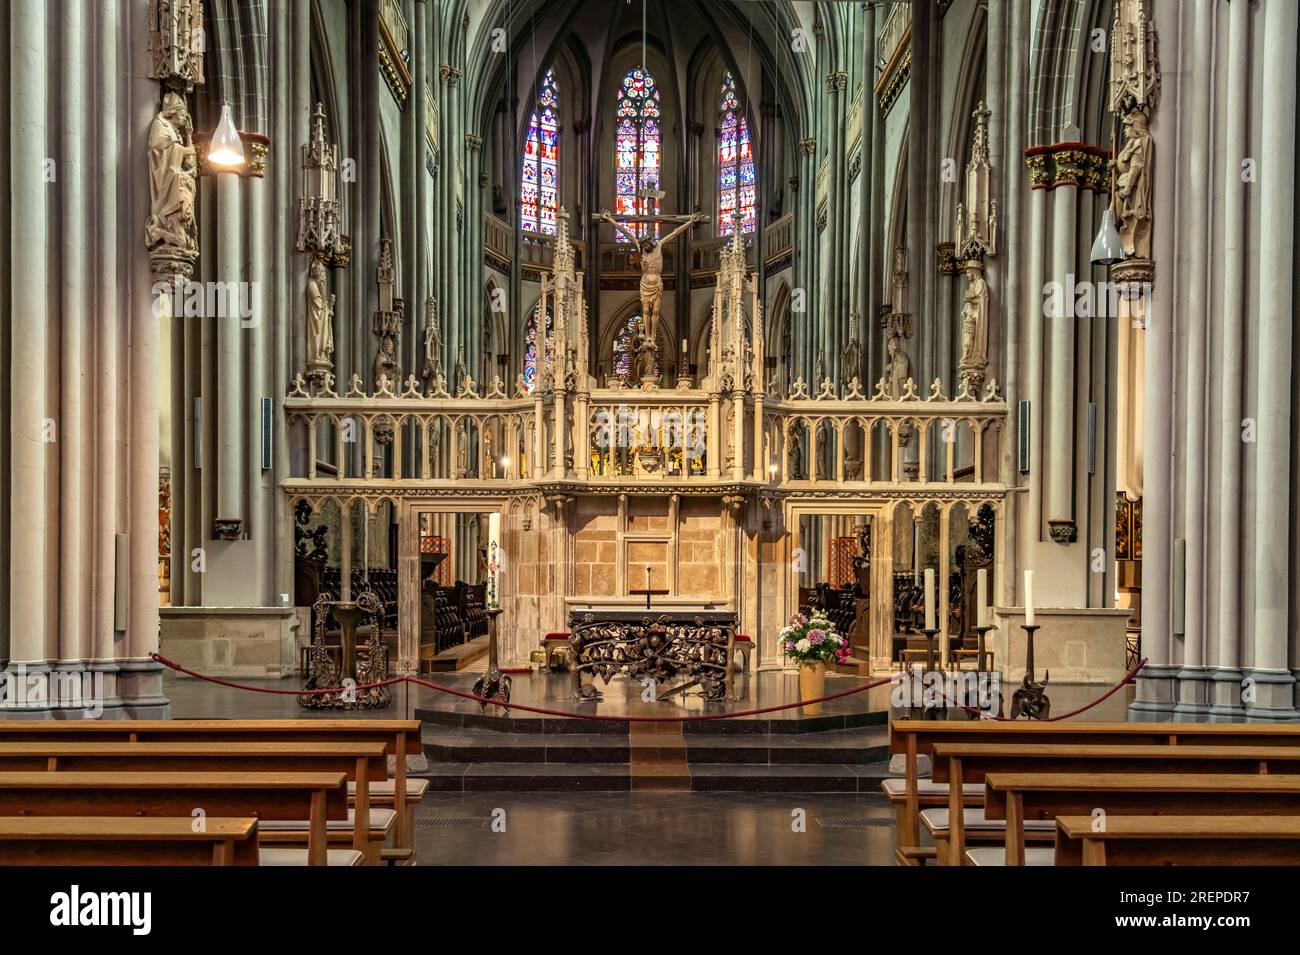 Innenraum der katholischen Kirche St. Viktor in Xanten, Niederrhein, Nordrhein-Westfalen, Deutschland, Europa |  Xanten Cathedral or St. Victor's Cath Stock Photo